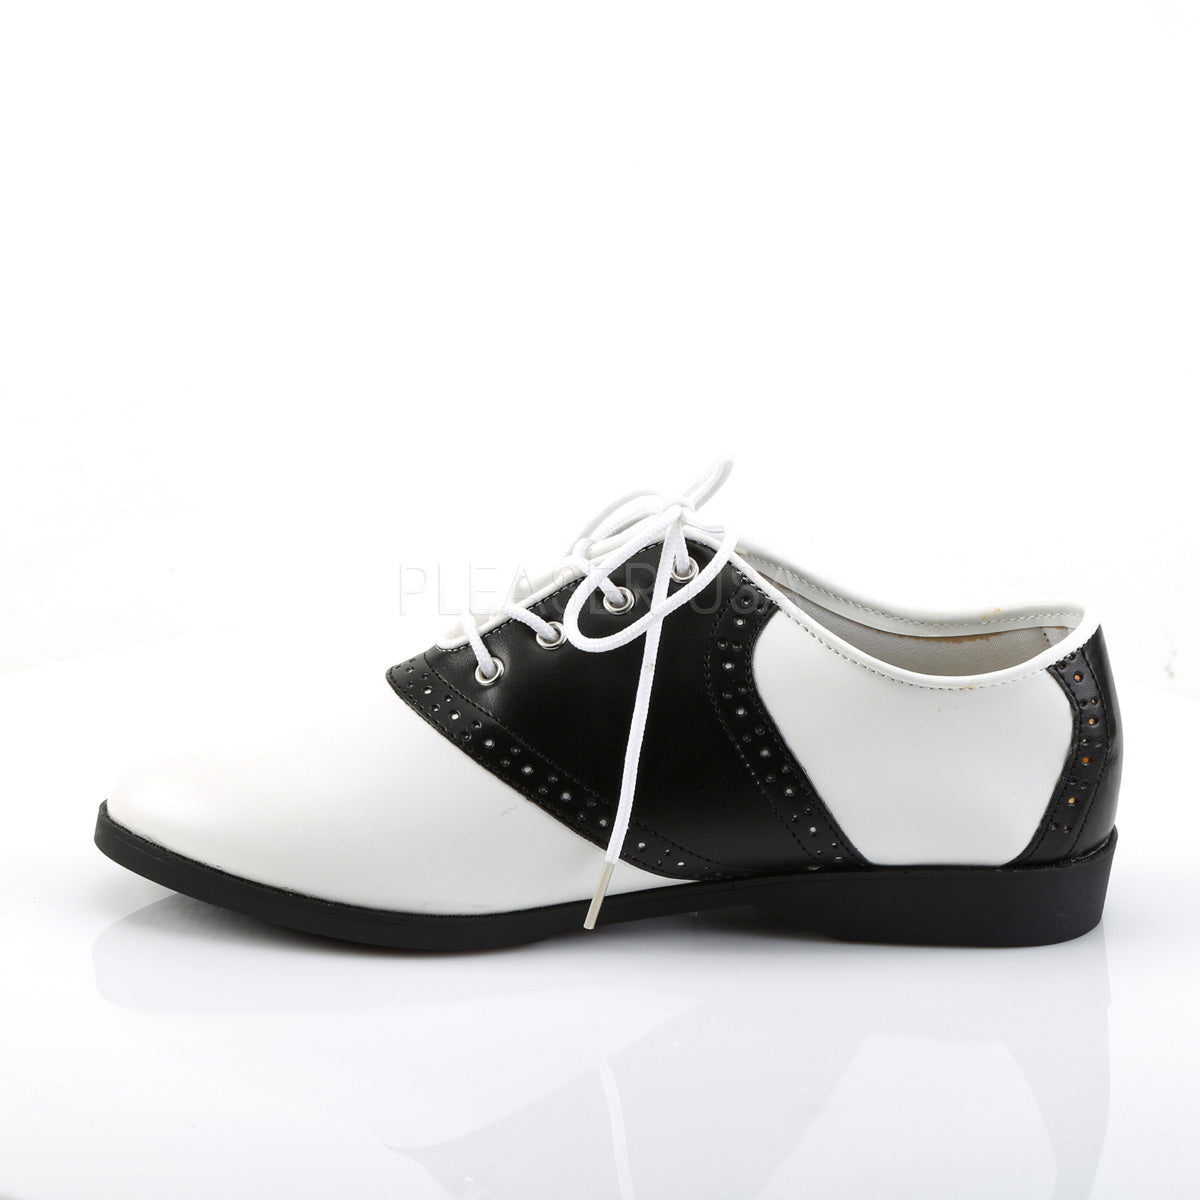 Flat Saddle Shoes Black White